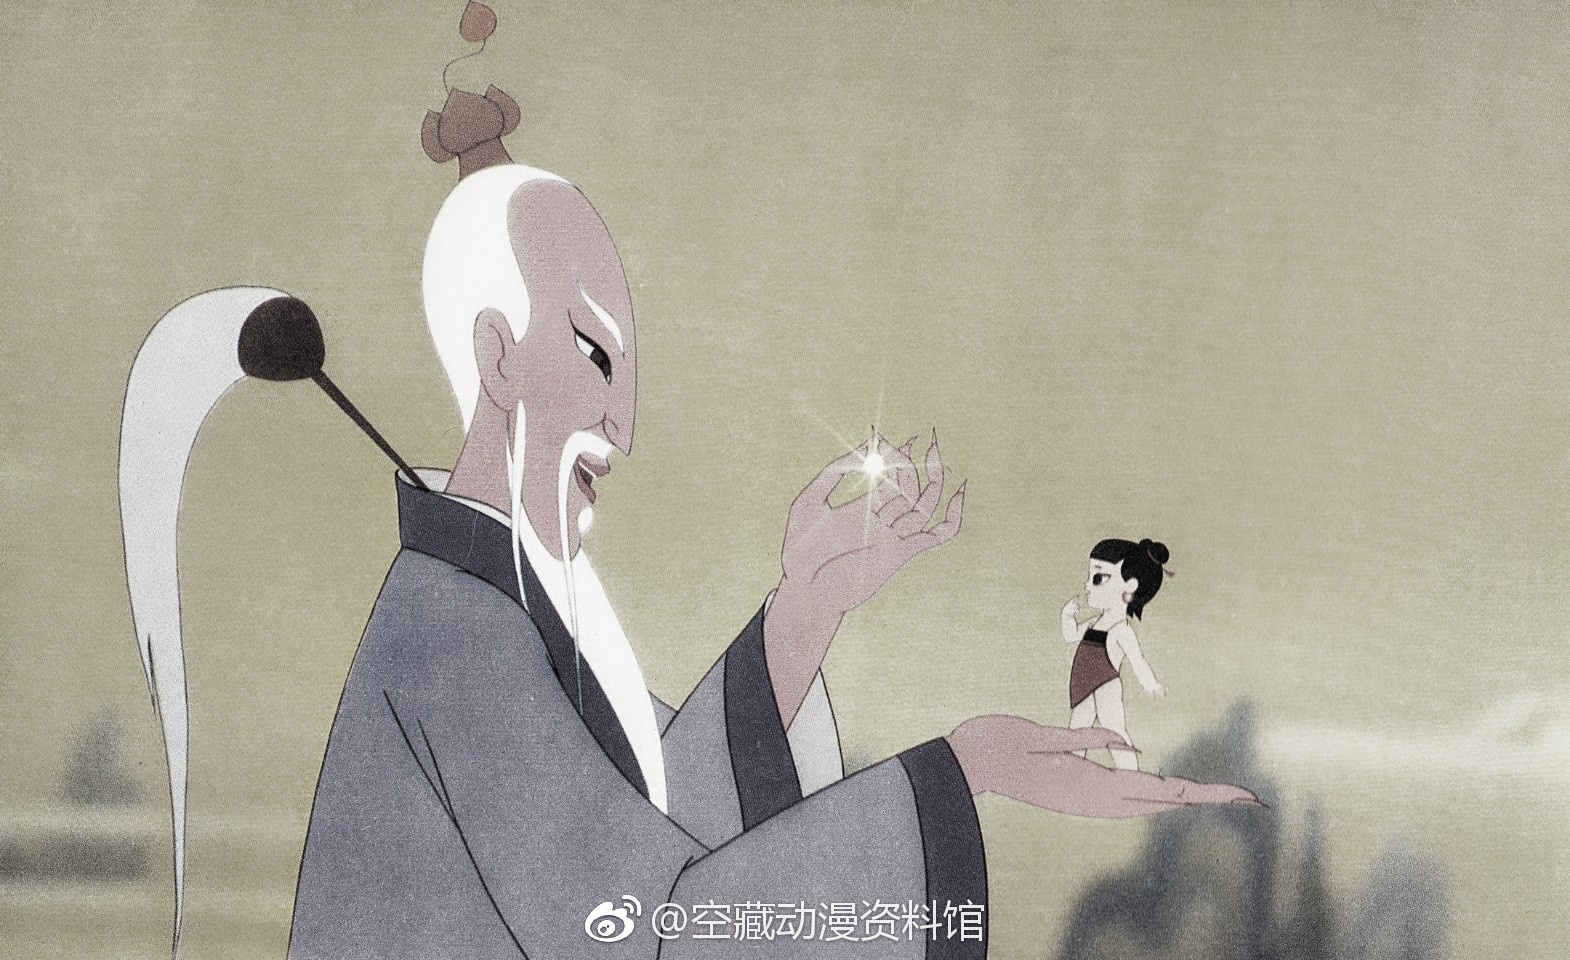 以前的中国动画那么棒。。。。